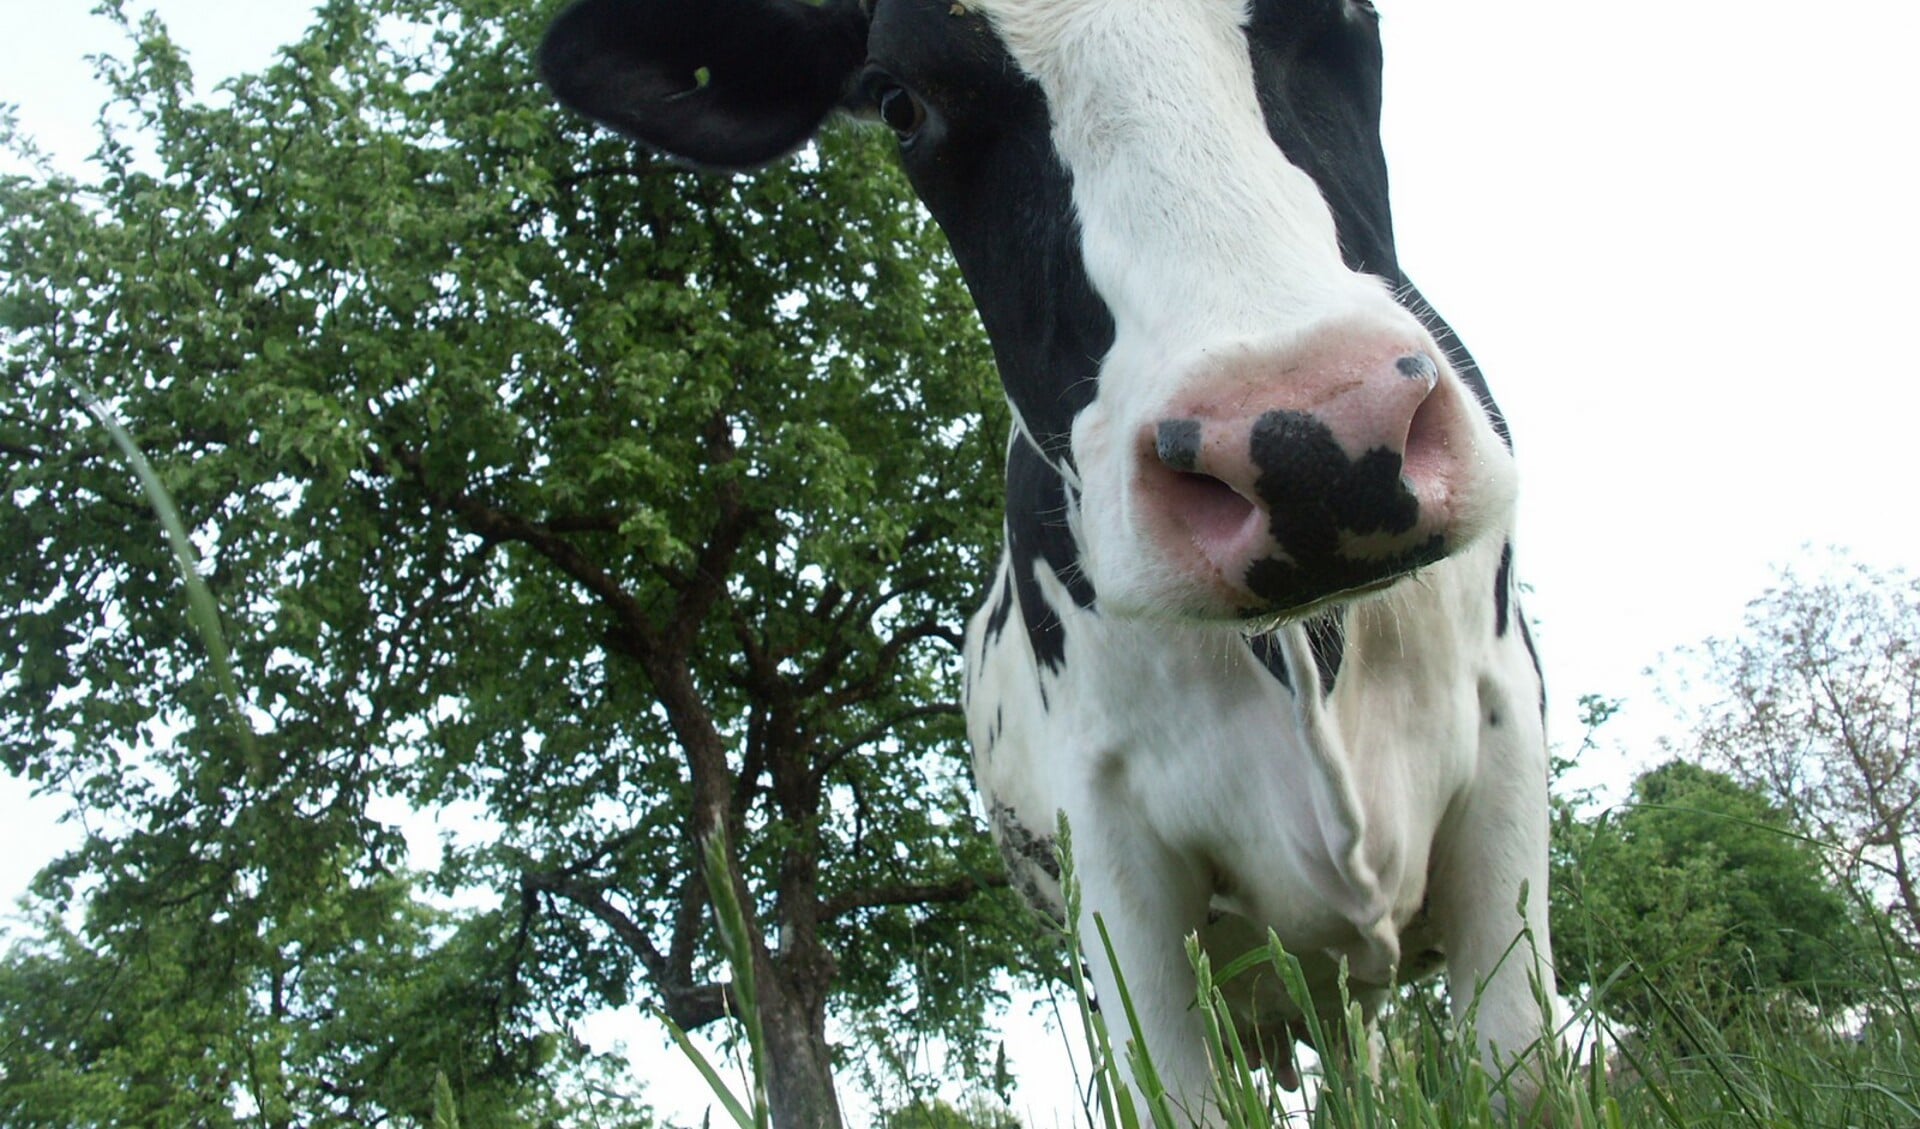 RIVM: 'Verminderde longfunctie voor wie woont nabij veehouderij'